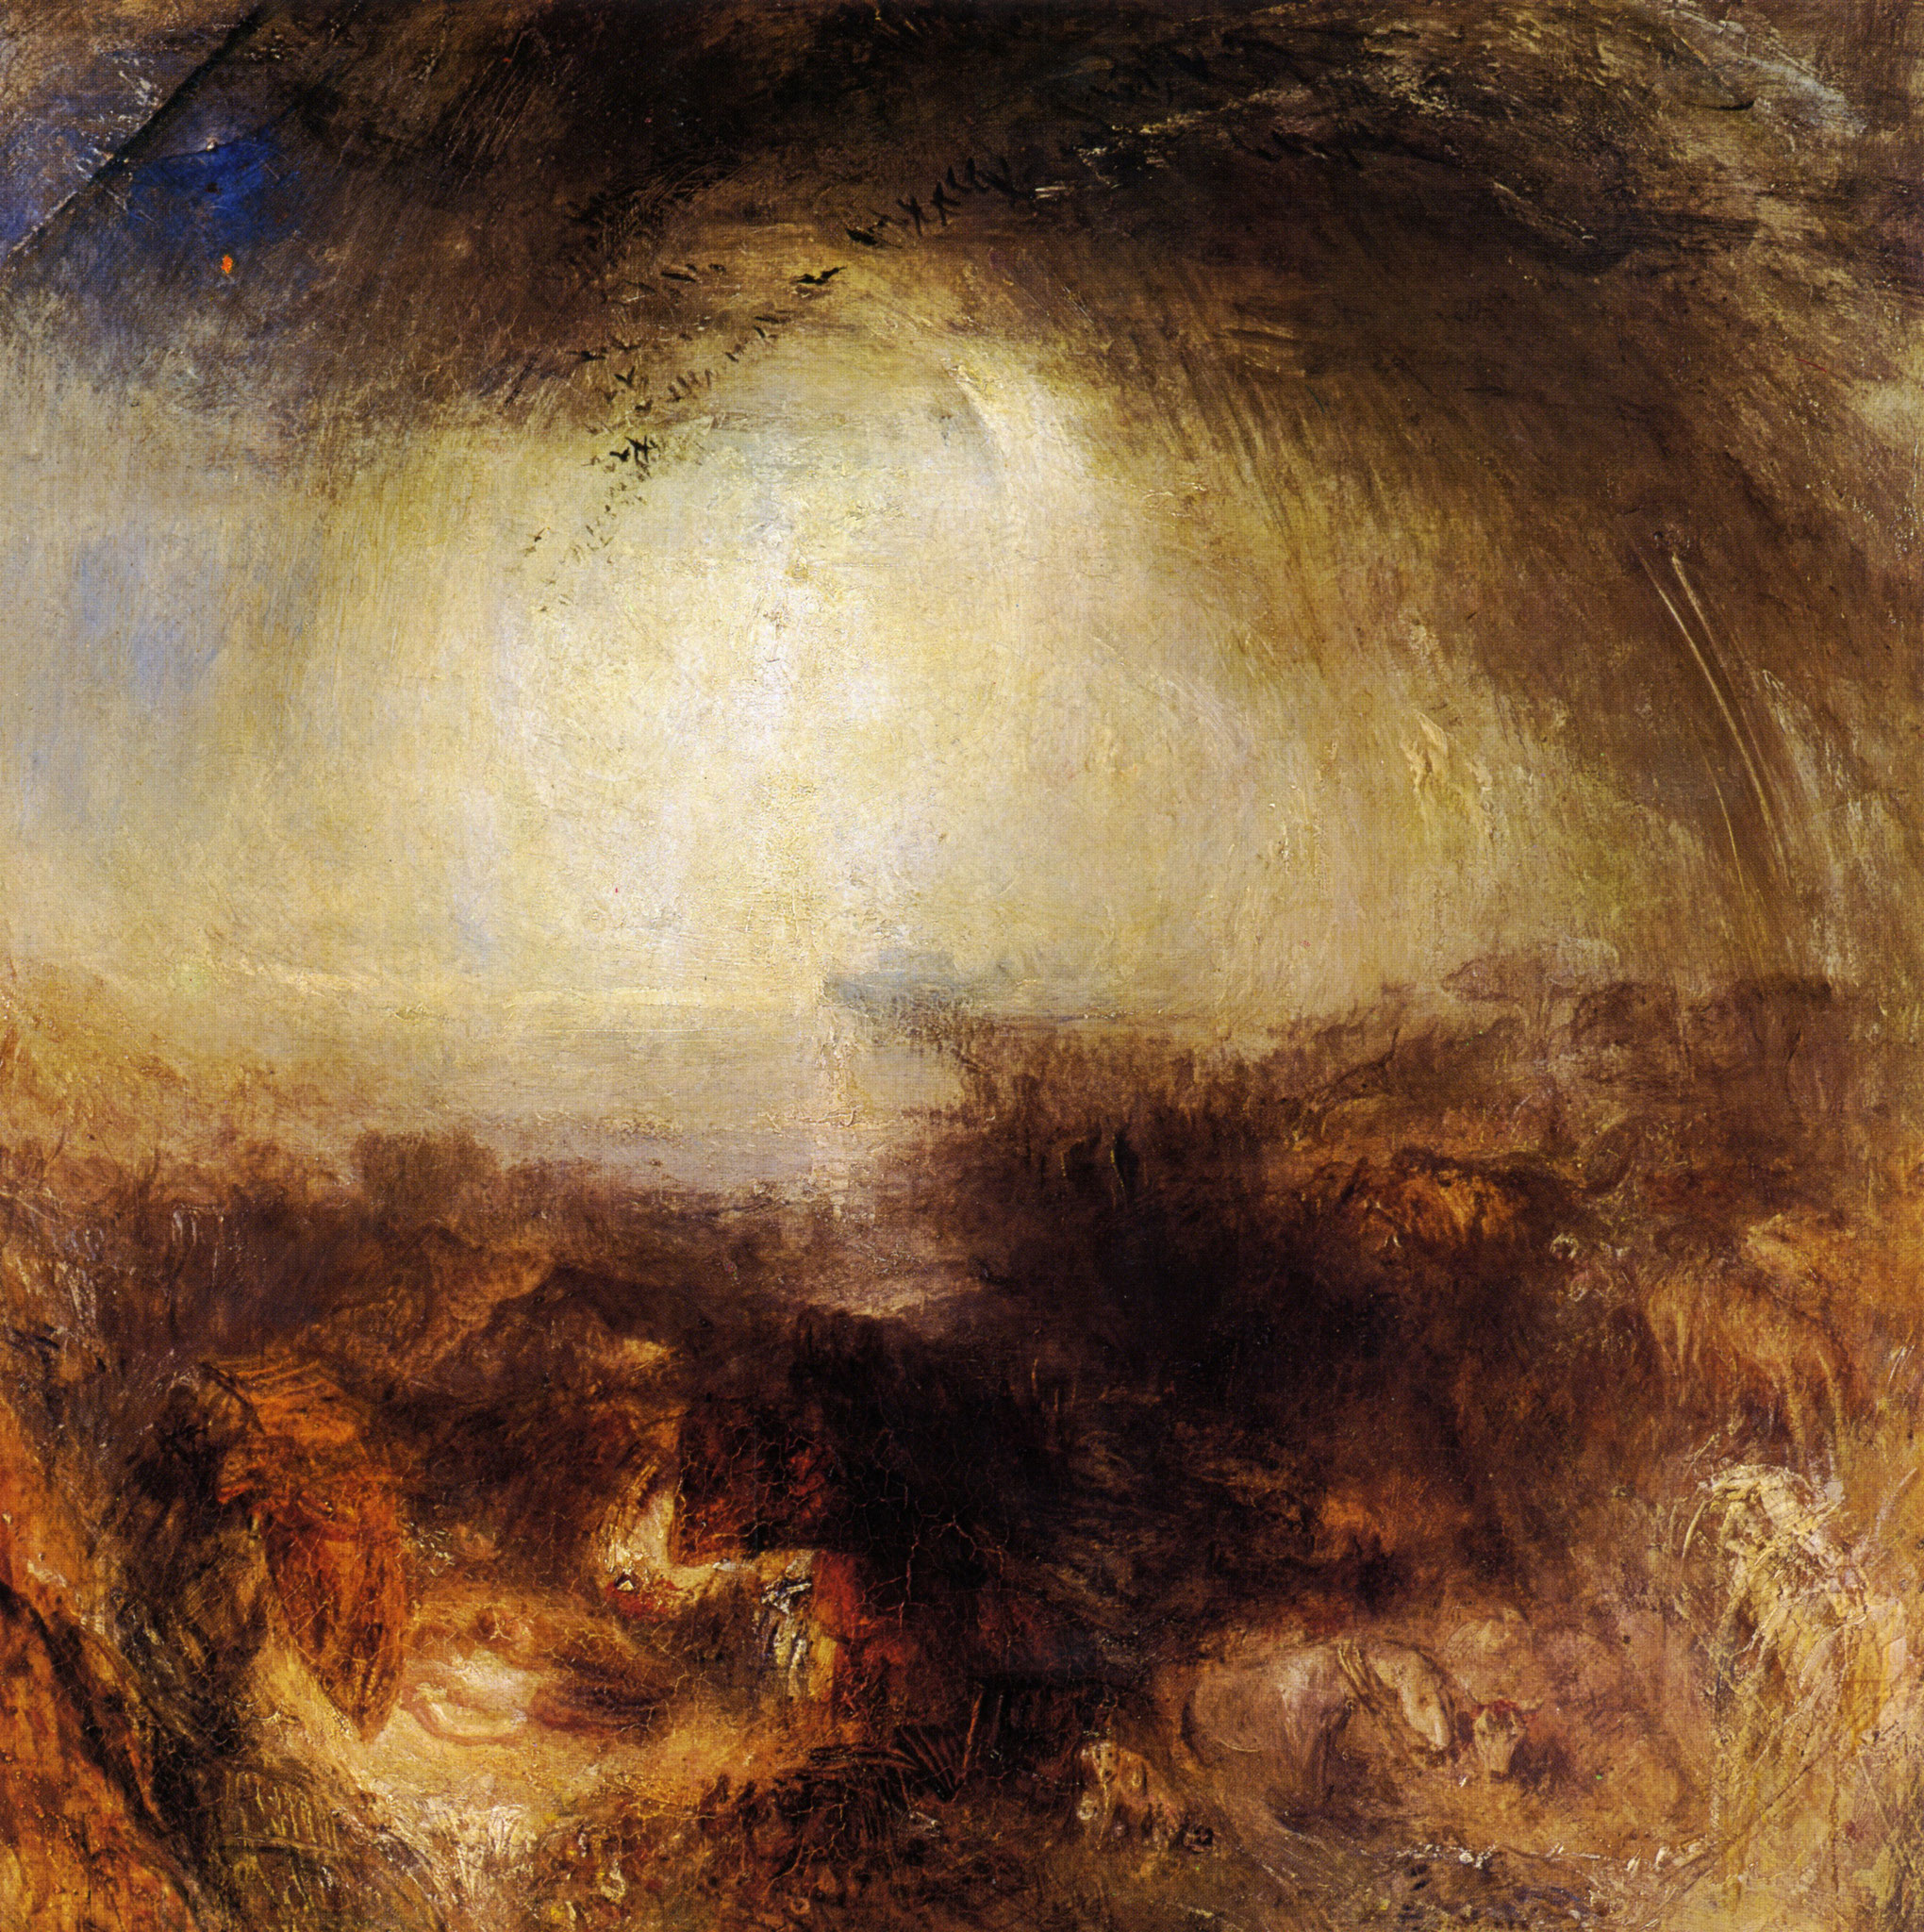  William Turner, Ombra e tenebre - La sera del diluvio, 1843